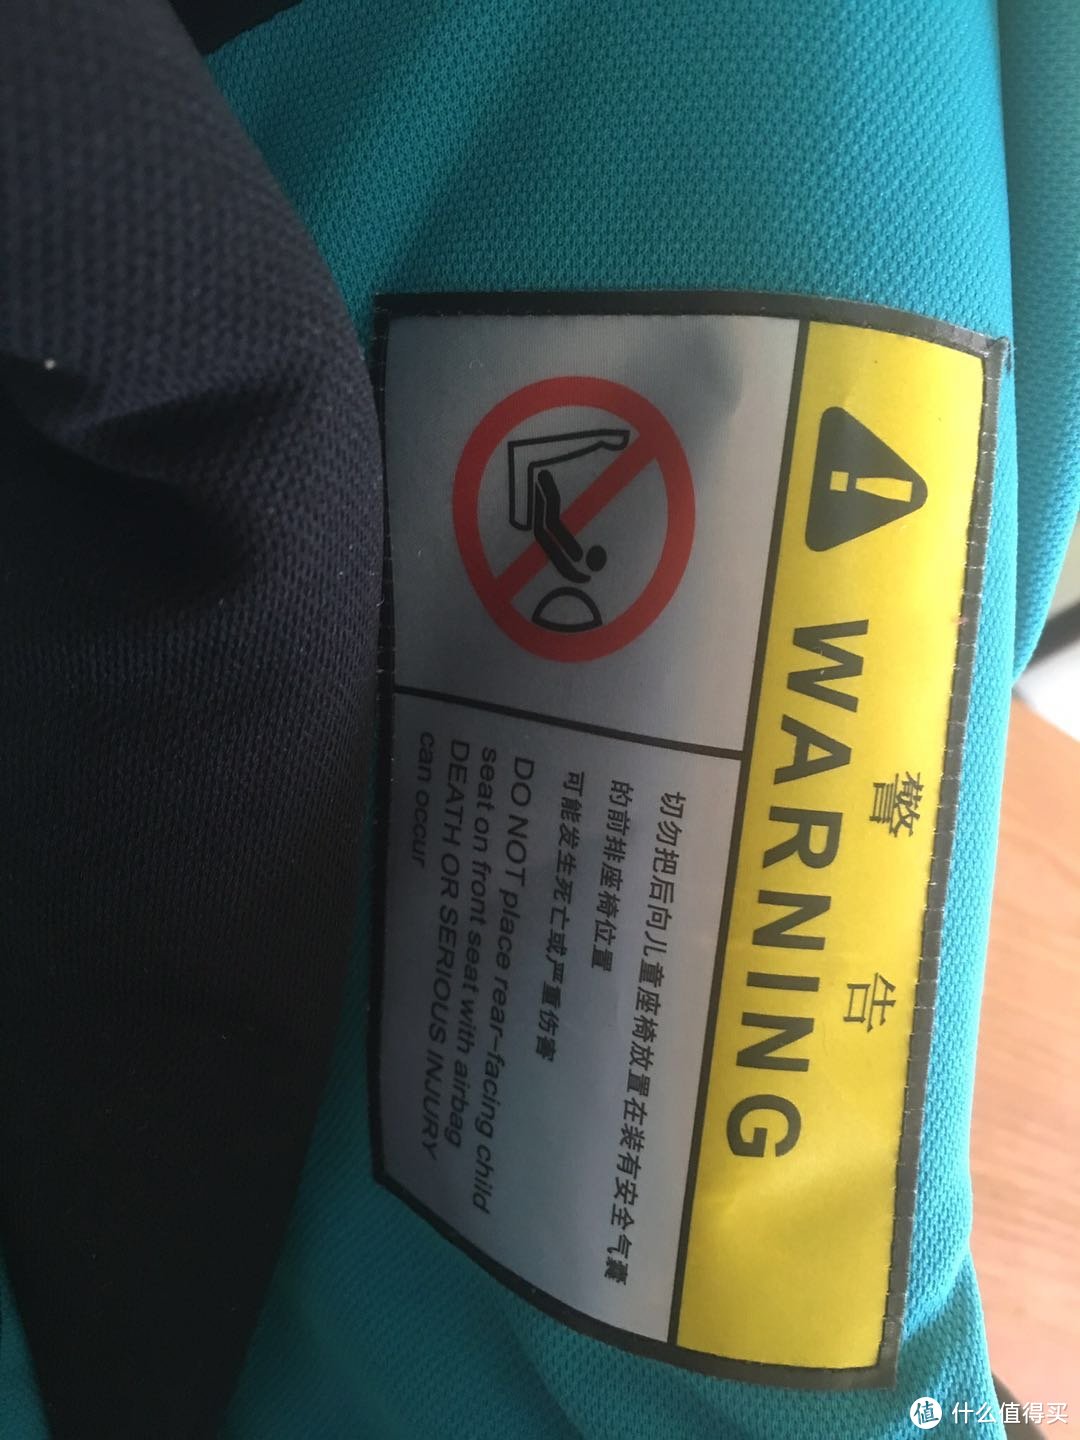 侧面的安全提示，不能反向安装在安全气囊的座椅上，这样的提示之后还分别在说明书和一张多语言提示条上看到，重要的事情说三遍？